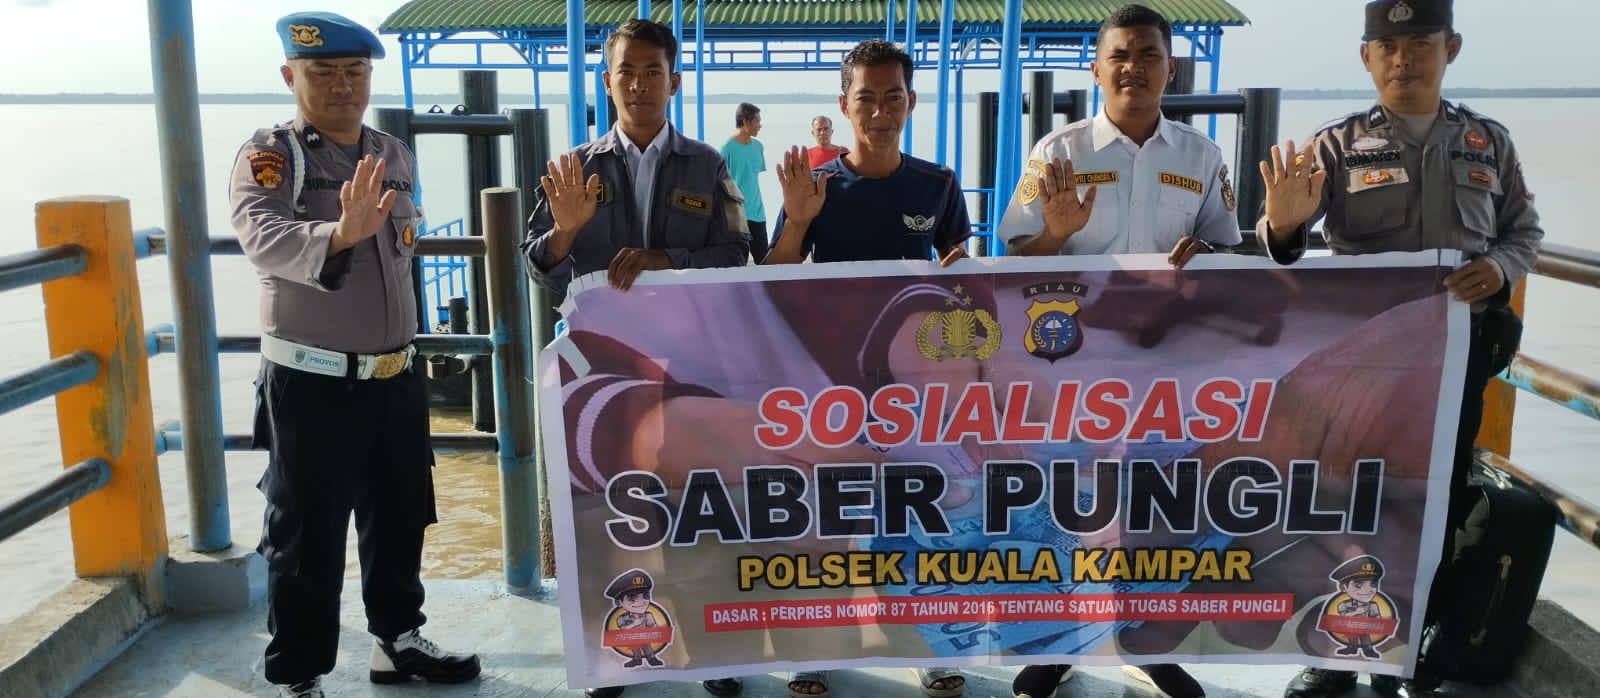 Polsek Kuala Kampar  Giat Sosialisasi  Satgas Saber Pungli  Di Dermaga